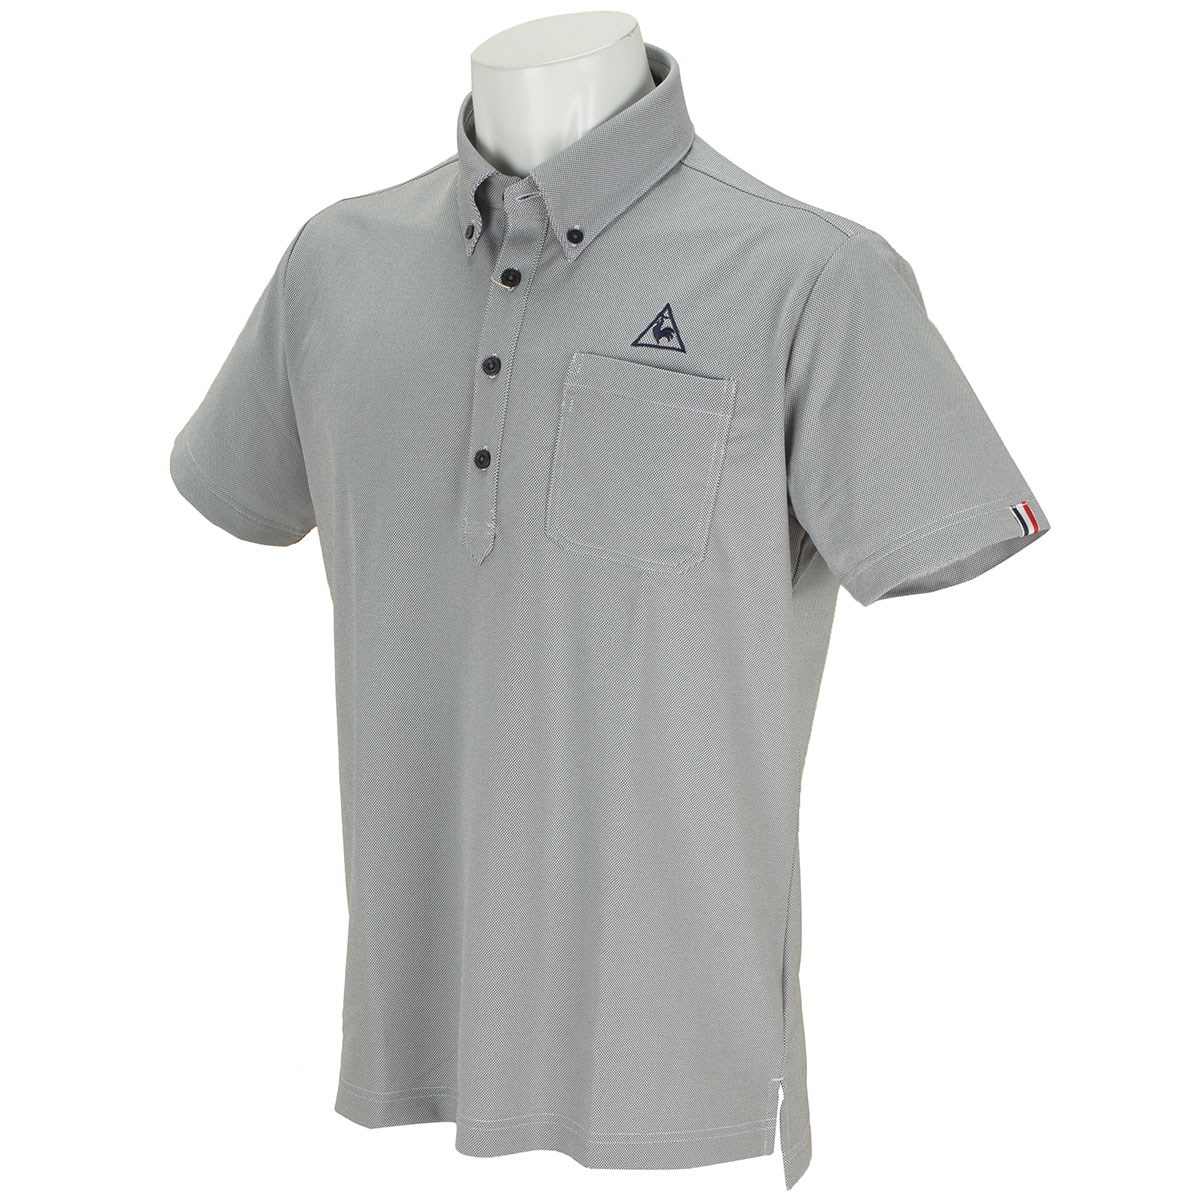 「ルコックゴルフ GDO限定ボタンダウン半袖ポロシャツ 」（ポロシャツ・シャツ）- ゴルフ(GOLF)用品のネット通販